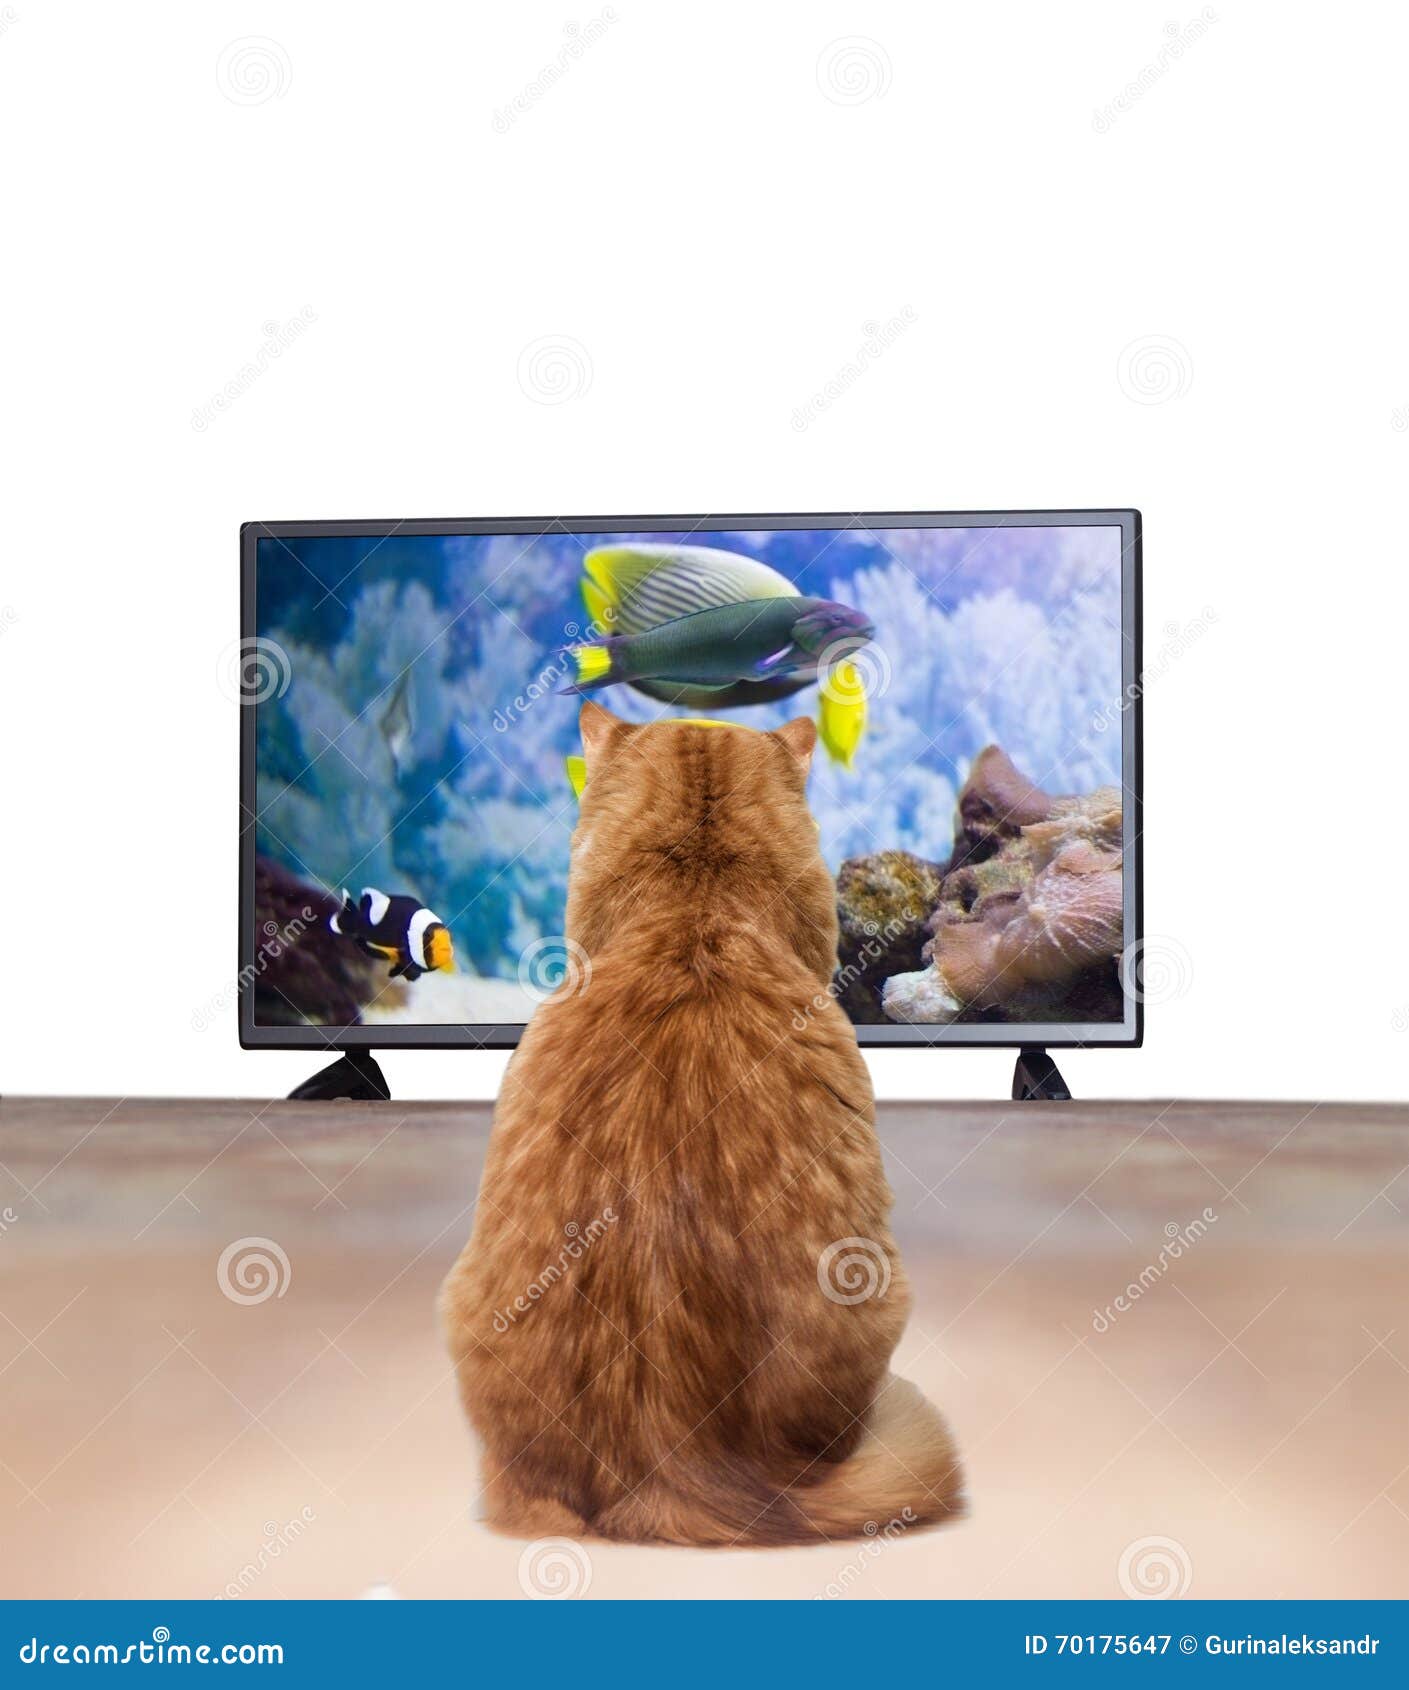 猫或者狗真的会看电视吗？ - 知乎